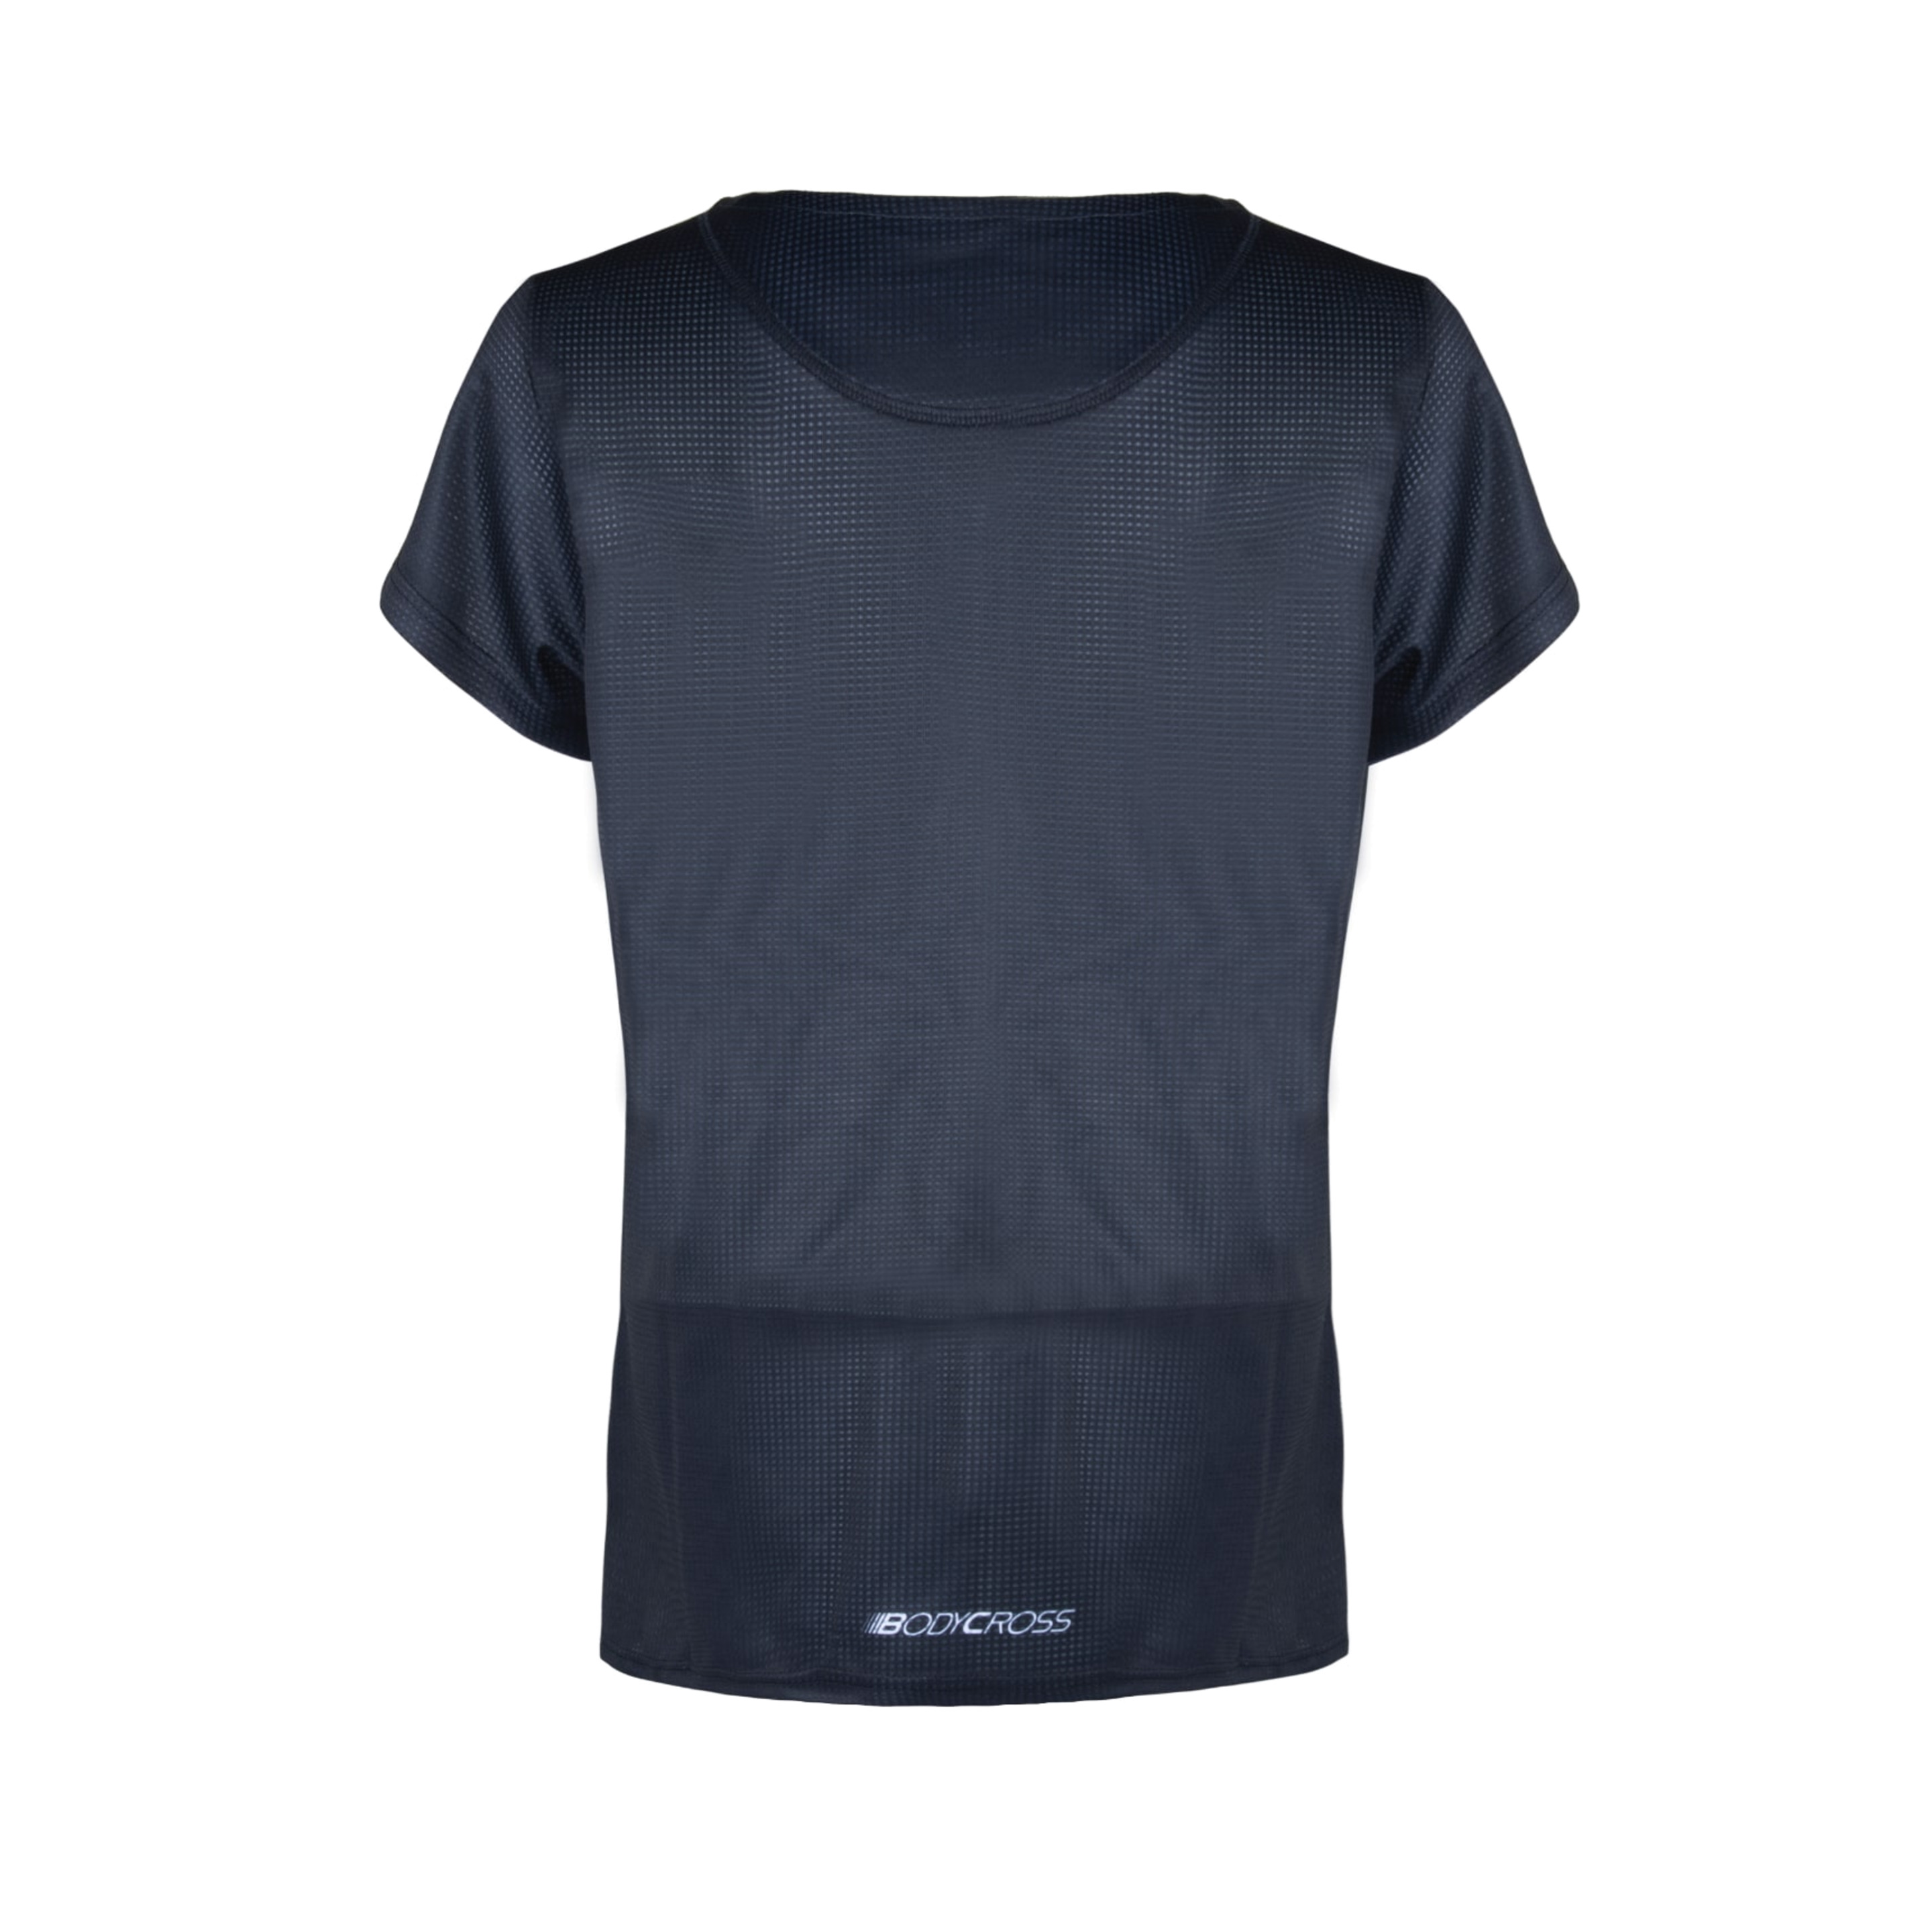 Camiseta Bodycross Ava - Negro - Ava-black/white-l  MKP